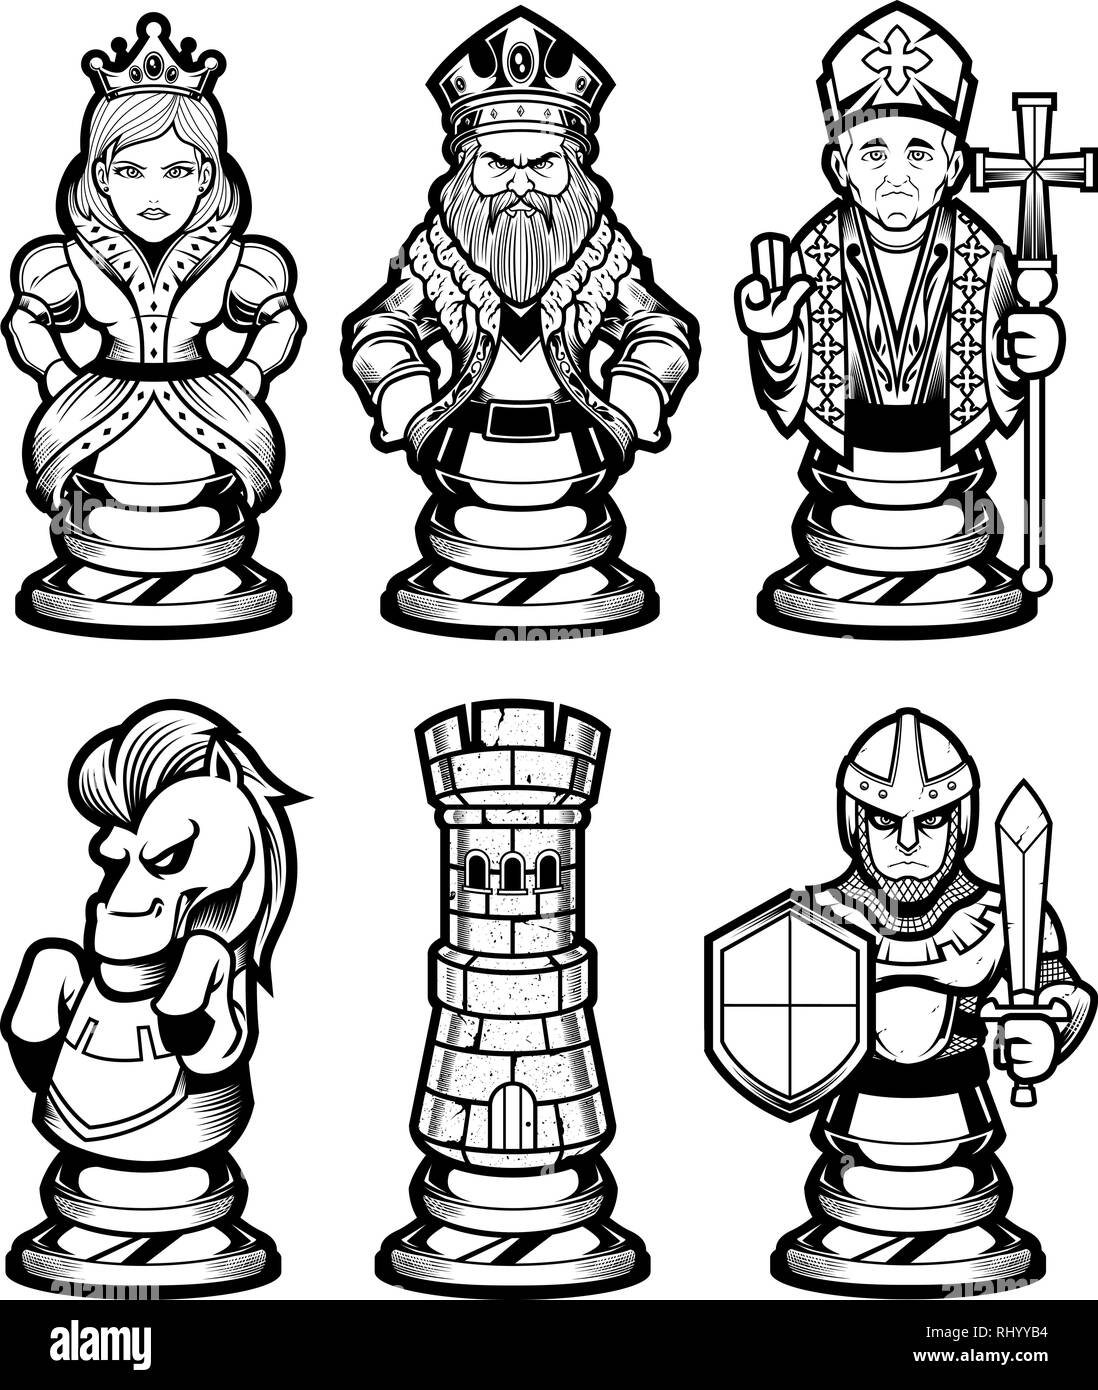 Jeu de pièces d'échecs noir et blanc Illustration de Vecteur